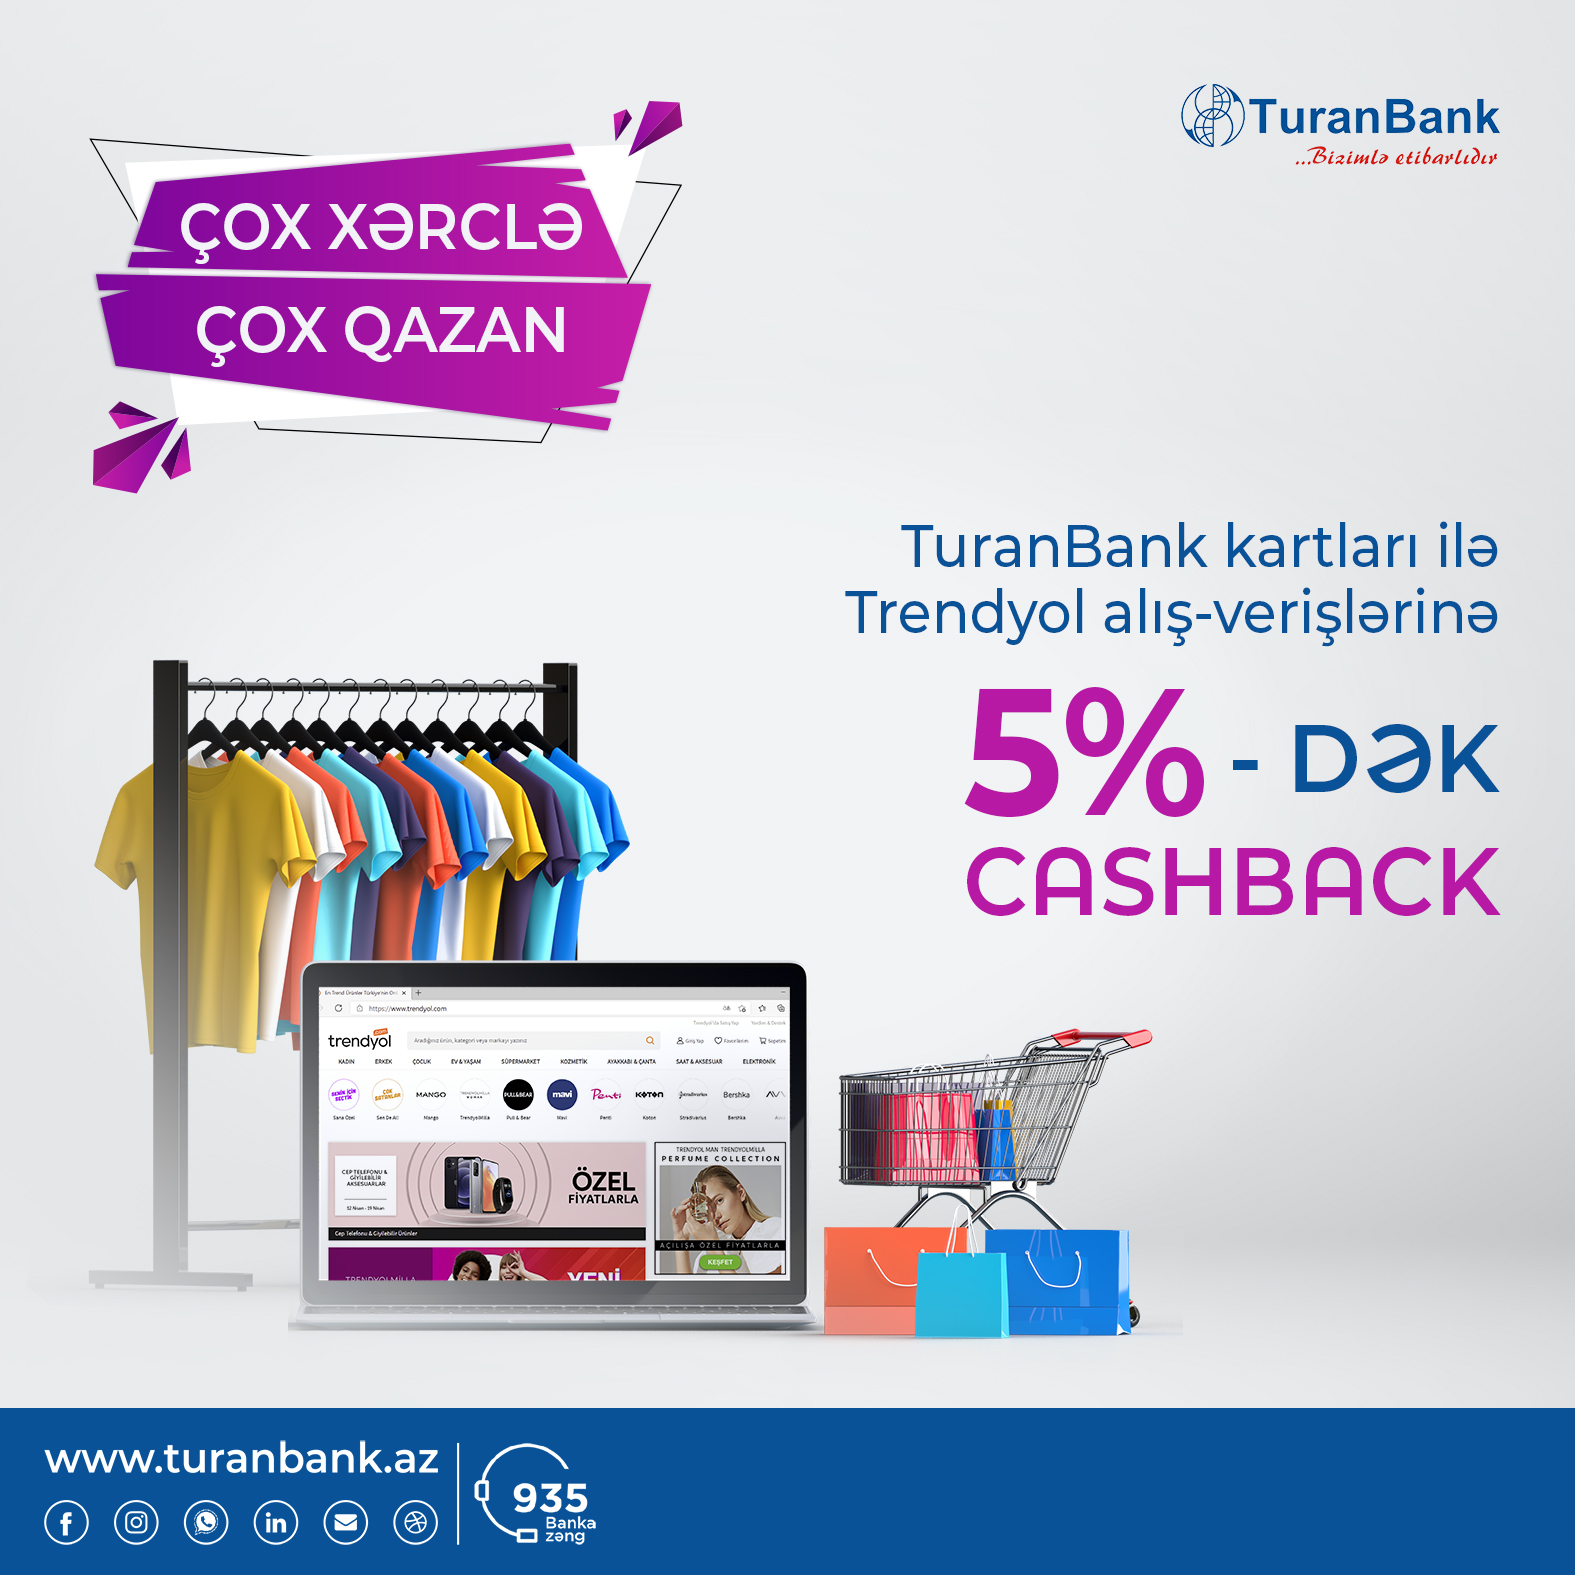 Trendyol-dan TuranBank kartları ilə alış-verişlərə 5%-dək cashback  hədiyyə!